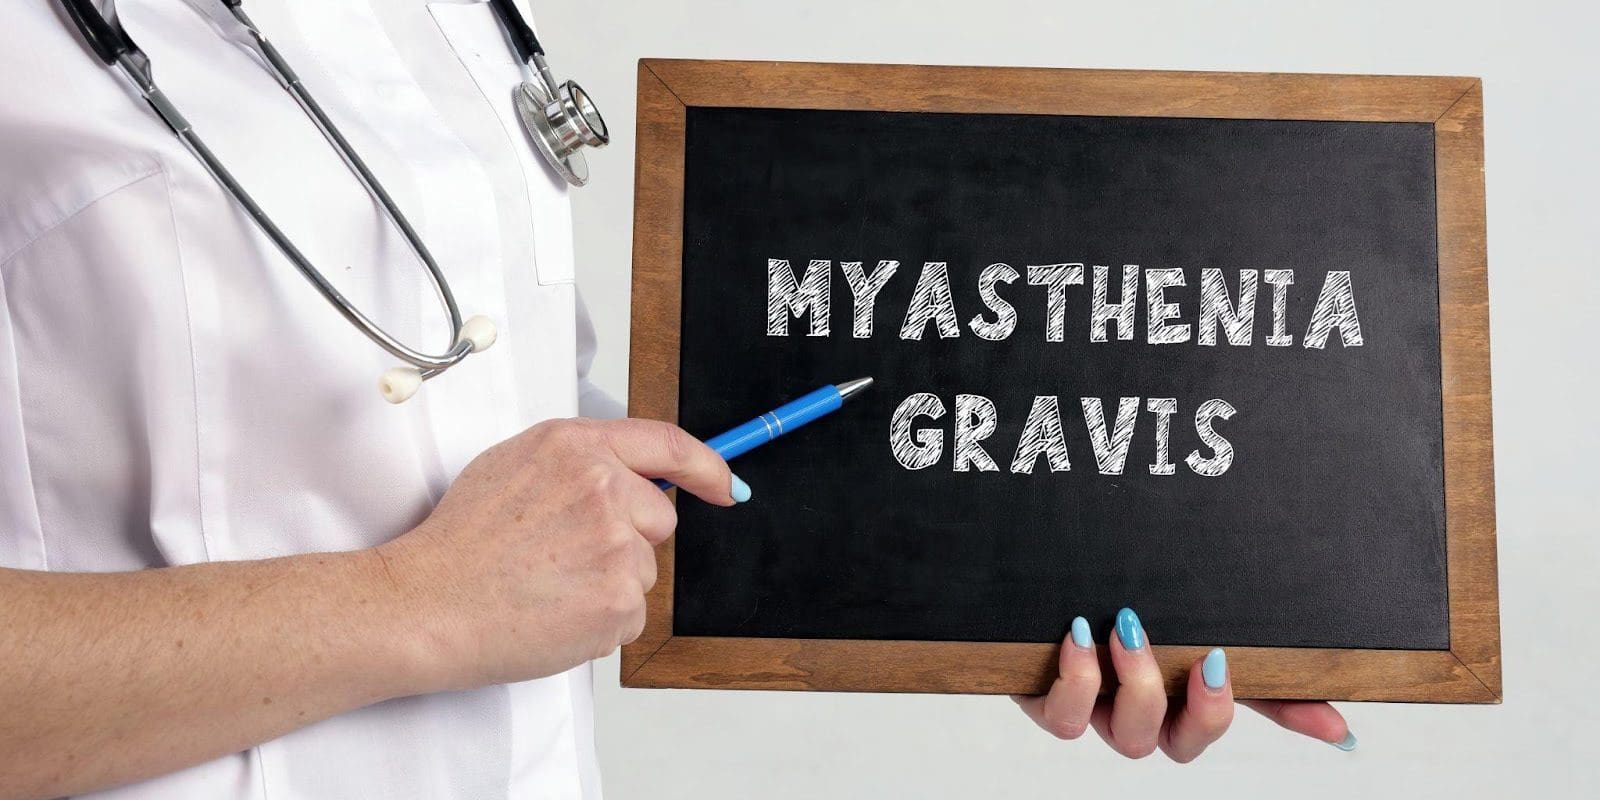 Healthcare worker holding a chalkboard that reads "Myasthenia Gravis".